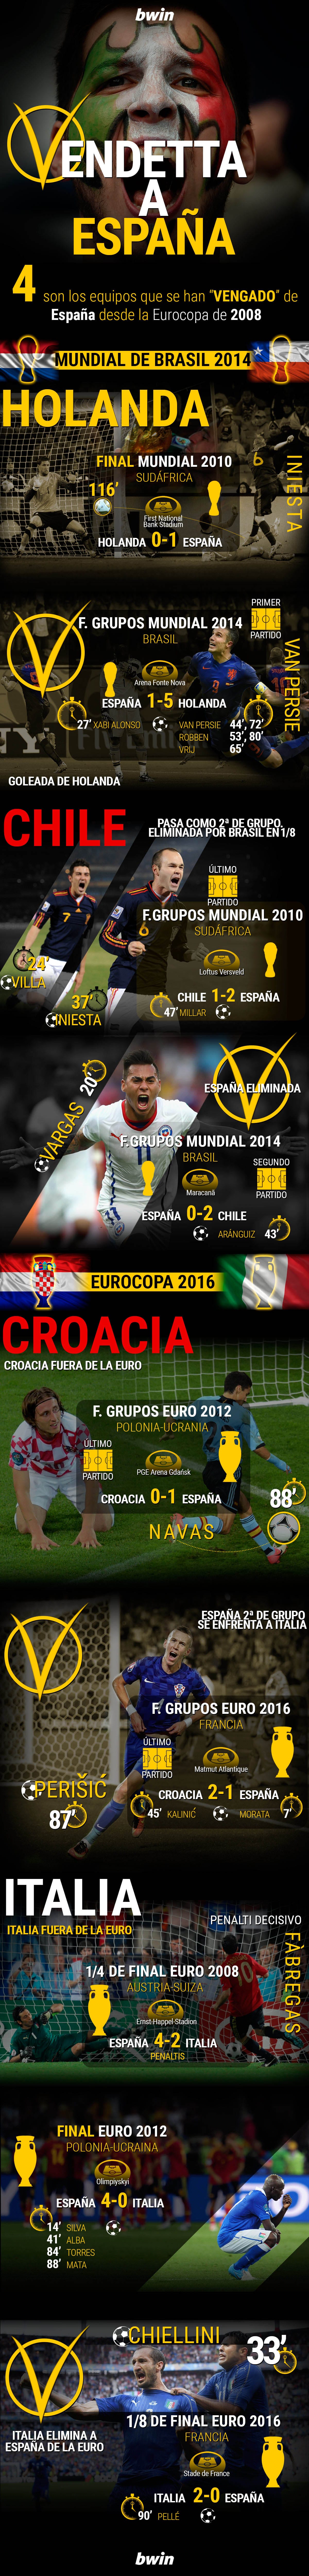 infografía-españa-italia-eurocopa